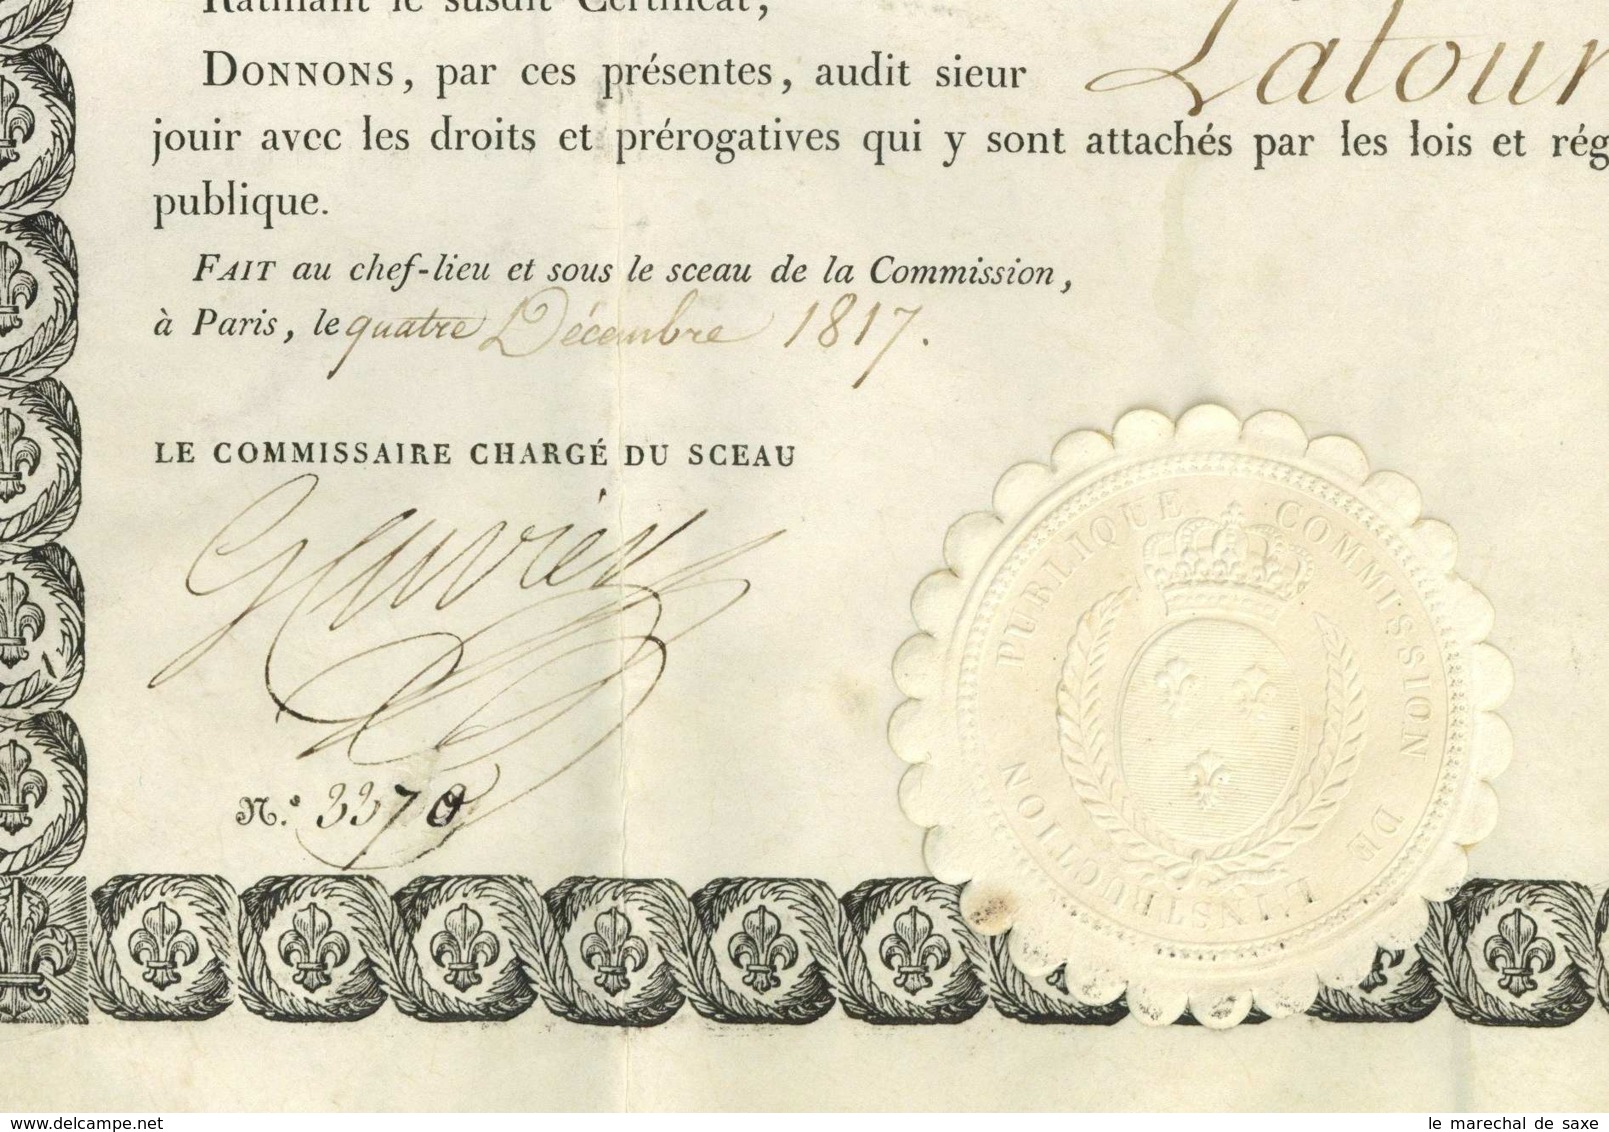 Diplome De Bachelier Es Lettres 1817 Georges CUVIER Royer-Collard Petitot Briancon Latour Grenoble - Diplomi E Pagelle